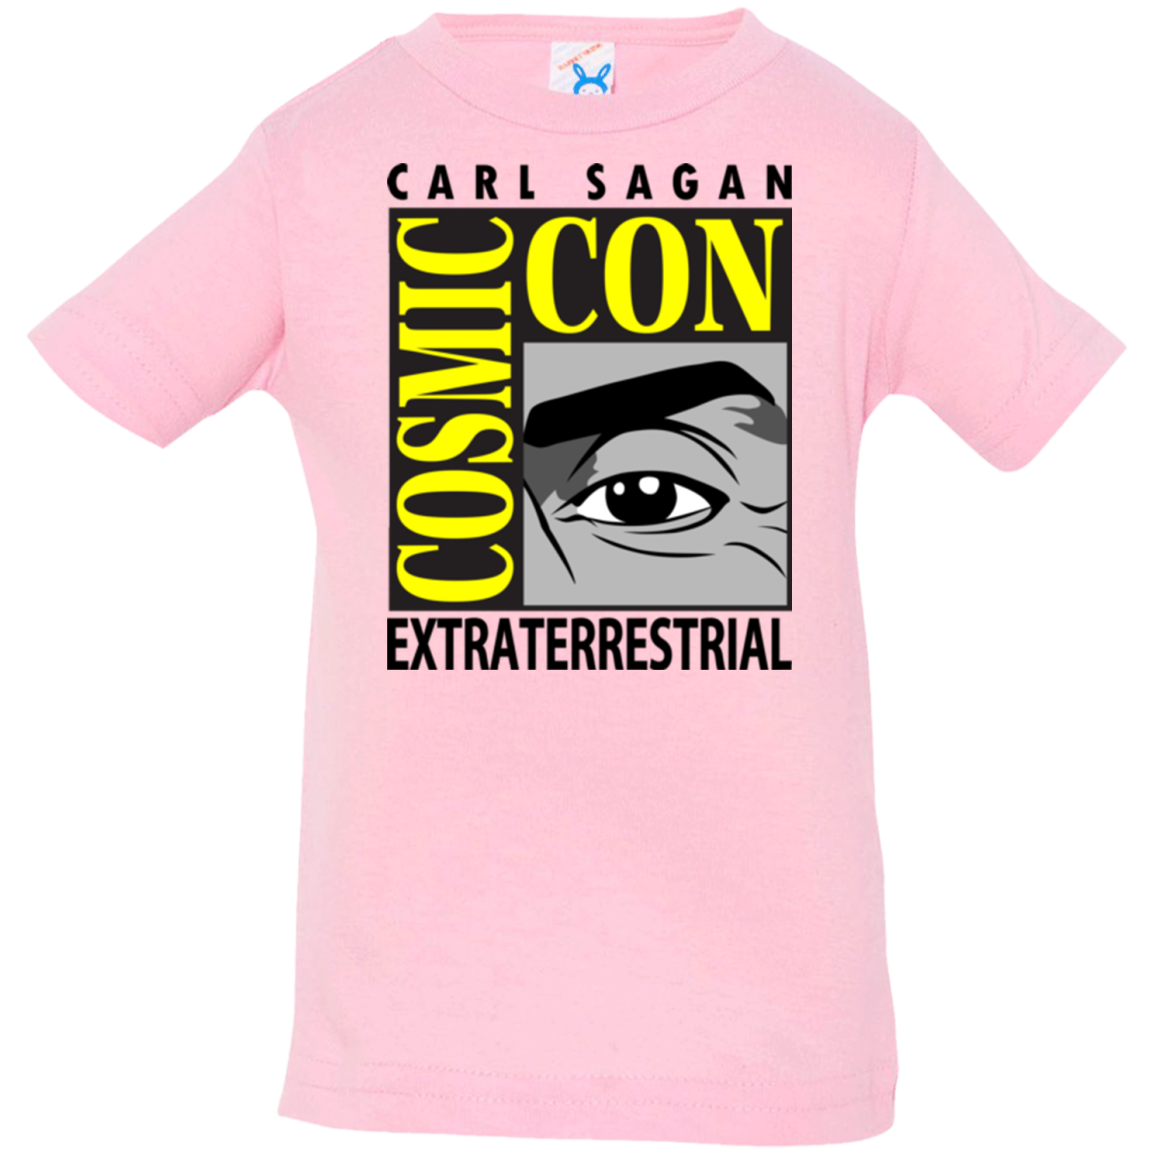 Cosmic Con Infant Premium T-Shirt